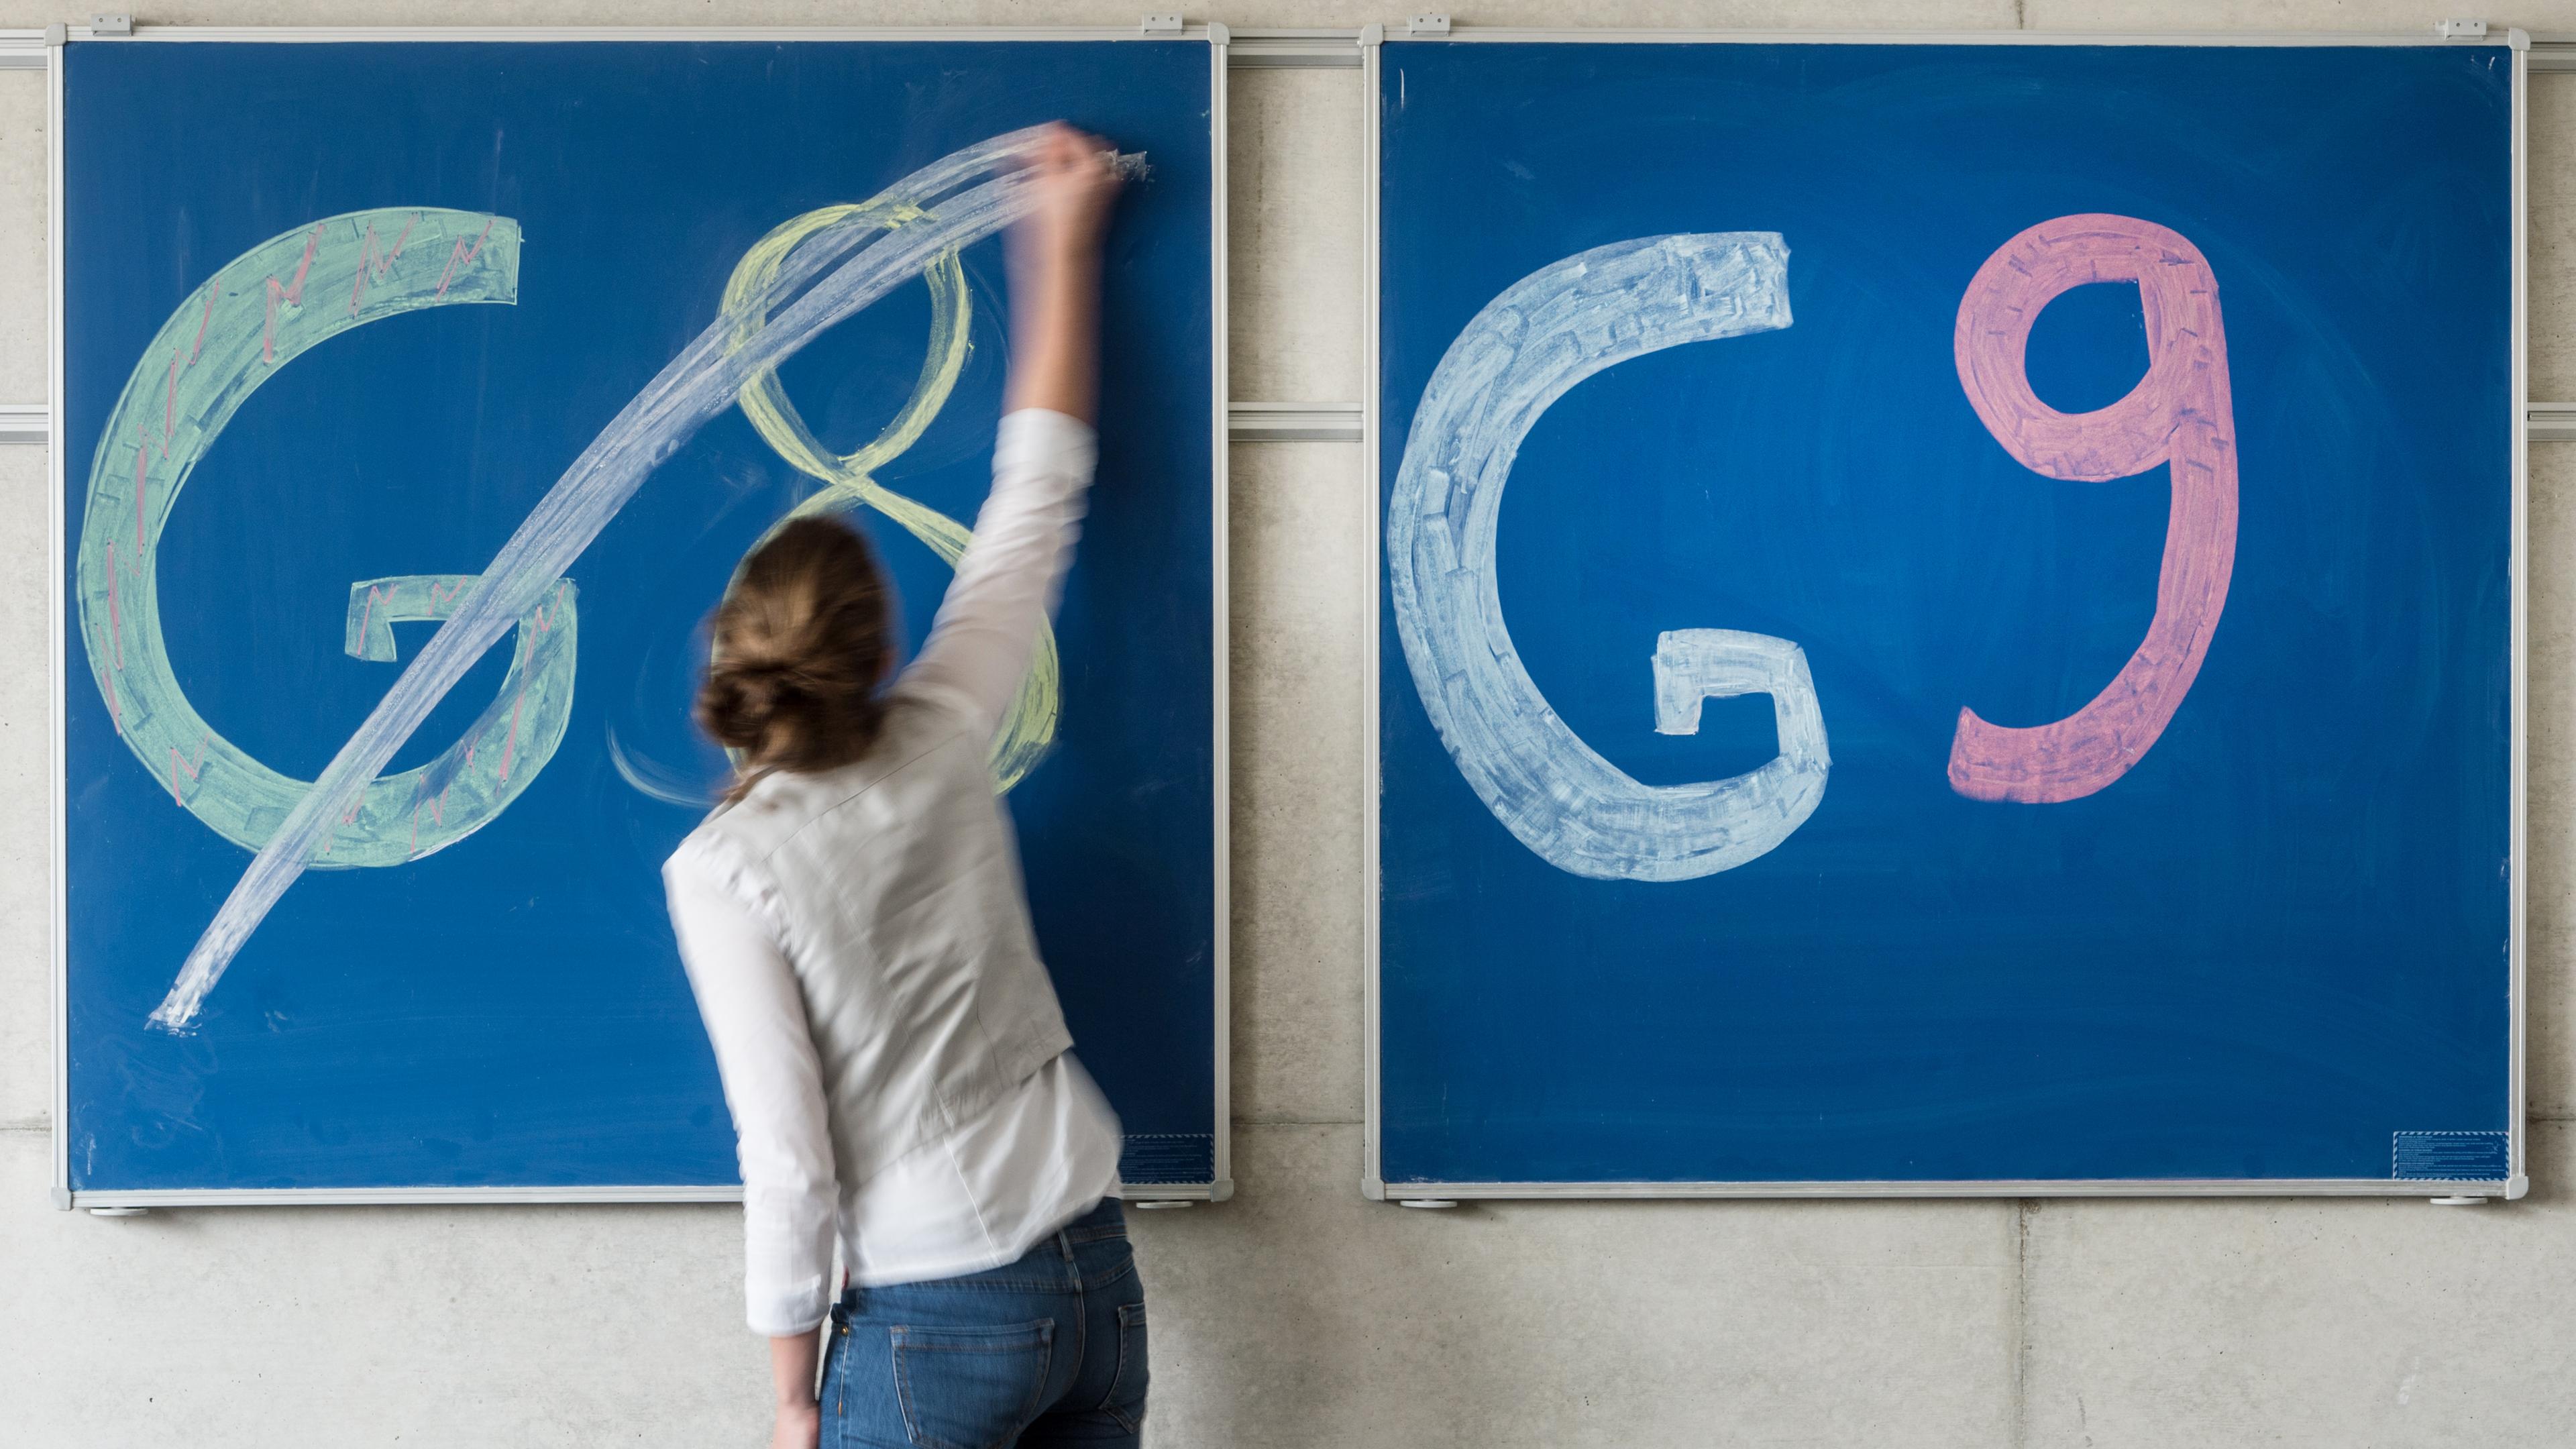 Eine Schülern der Oberstufe streicht an einem Gymnasium den Schriftzug "G8" an einer Tafel durch, daneben lässt sie "G9" unberührt.